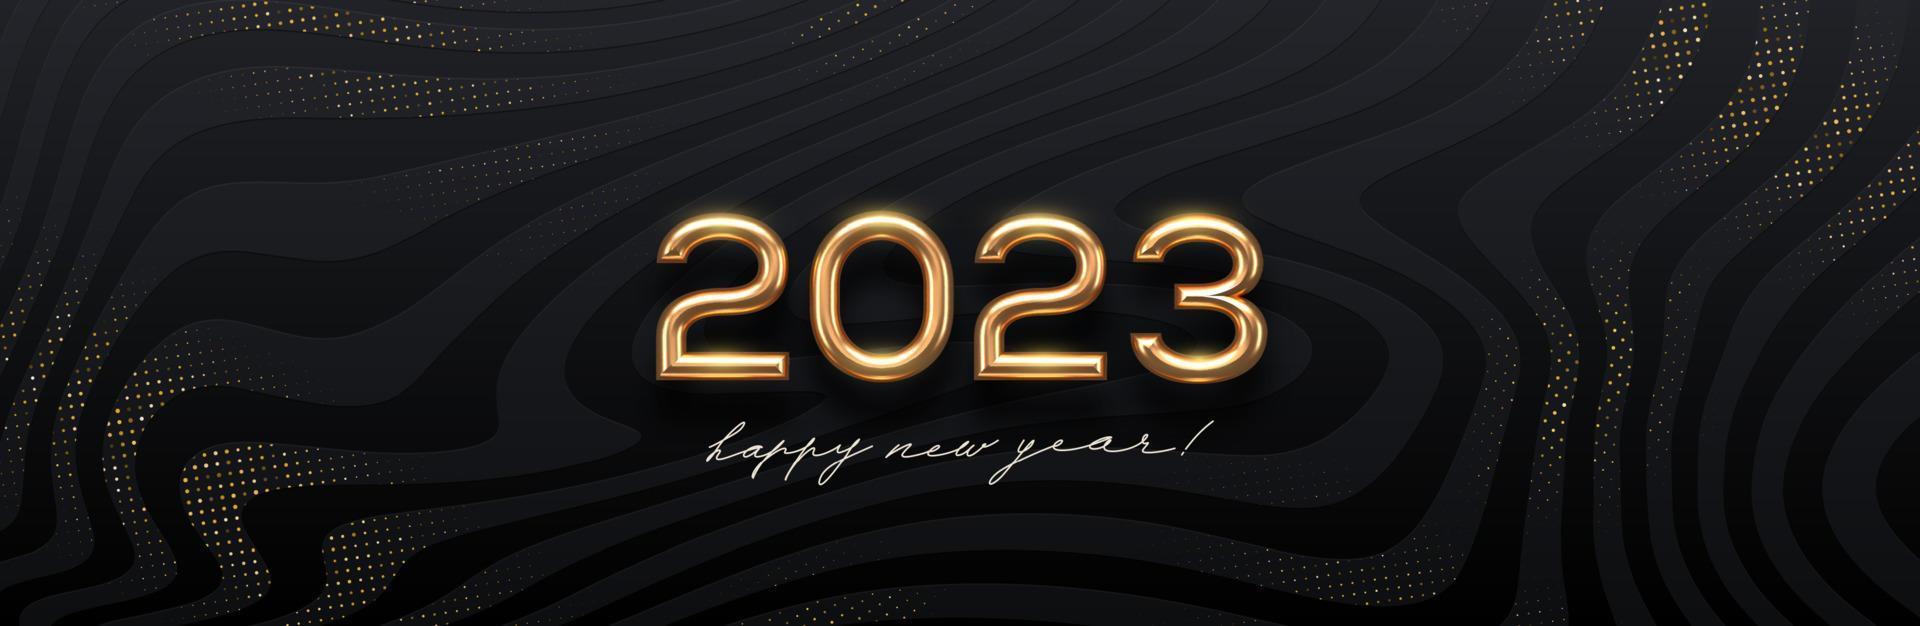 2023 ny år gyllene logotyp på abstrakt svart vågor bakgrund. hälsning design med realistisk guld metall siffra av år. design för hälsning kort, inbjudan, kalender, etc. vektor illustration.